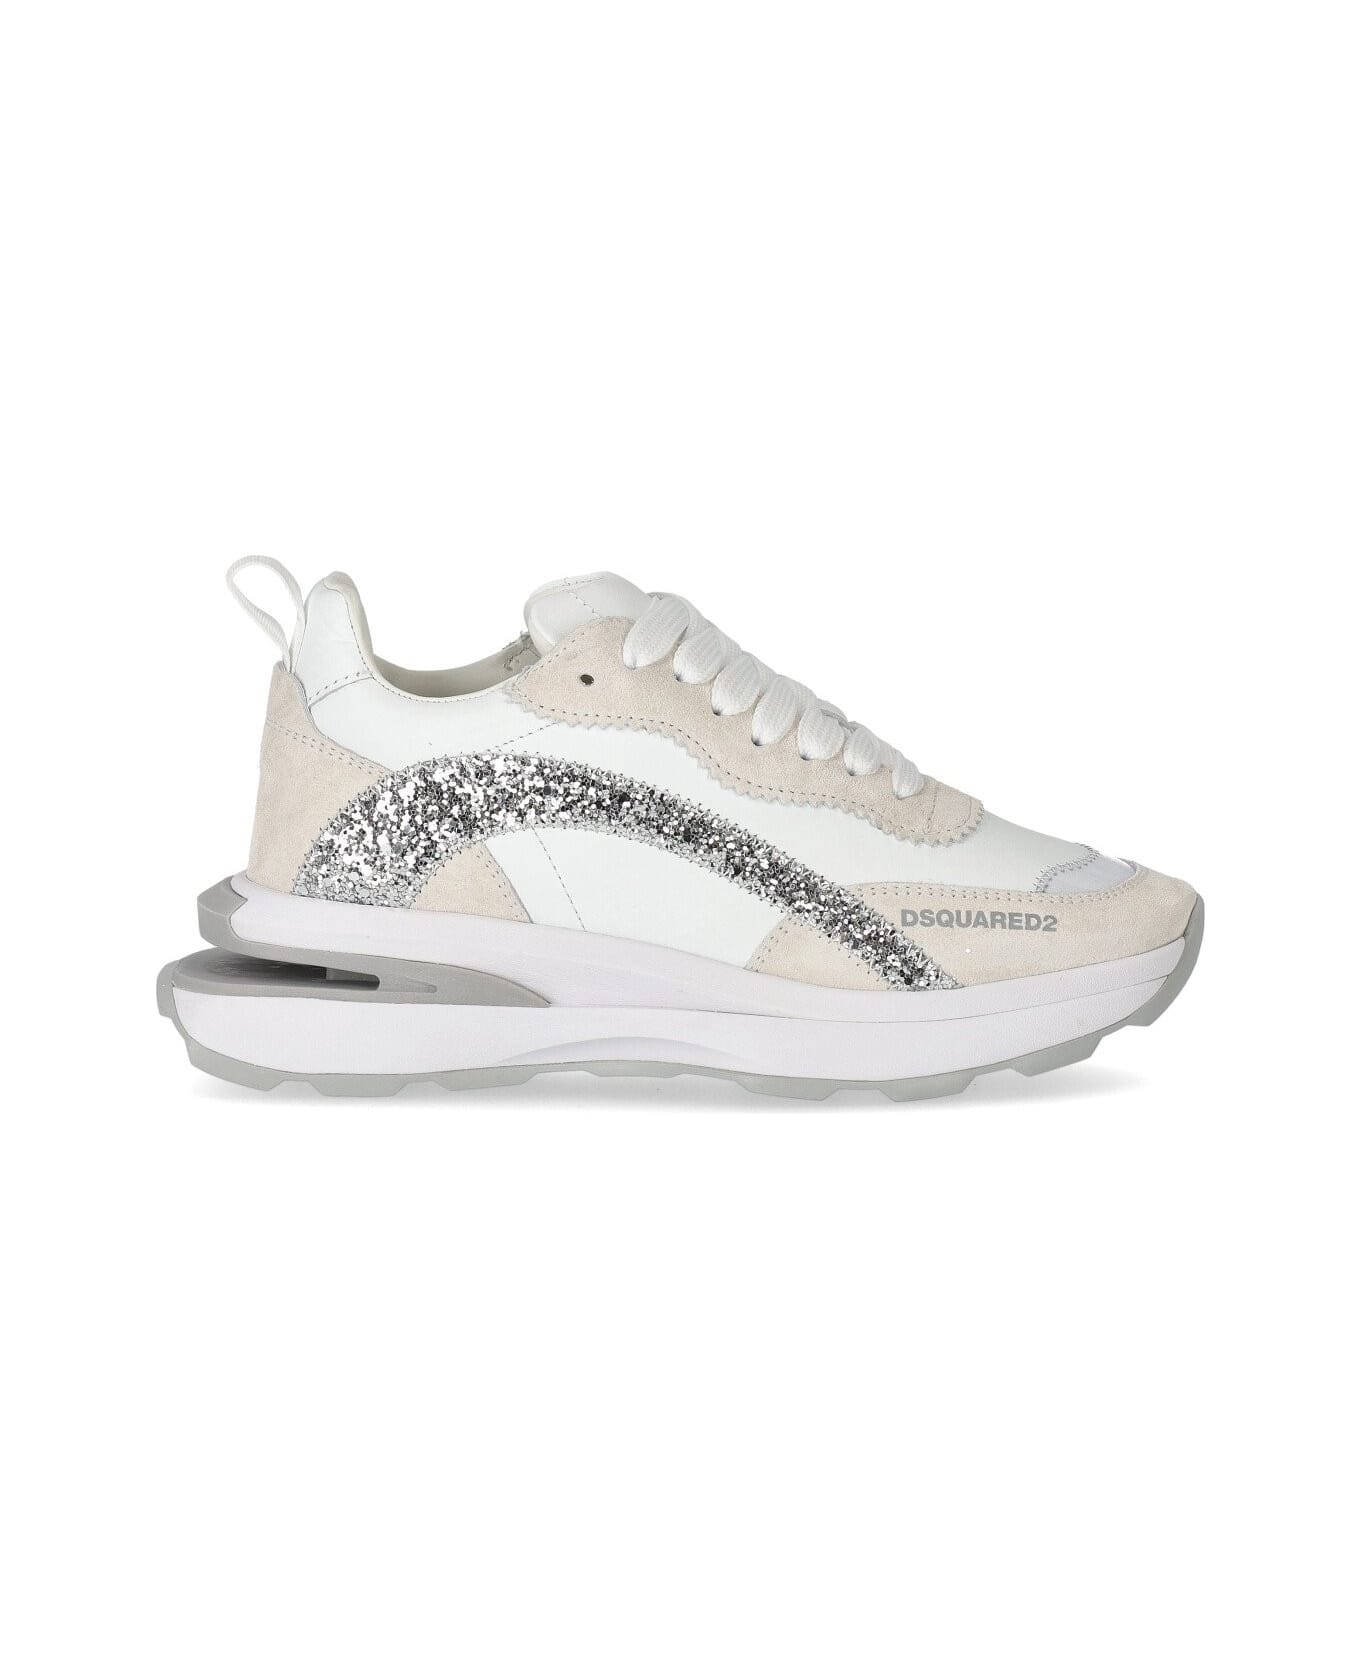 Dsquared2 Slash Glitter White Sneaker - Bianco